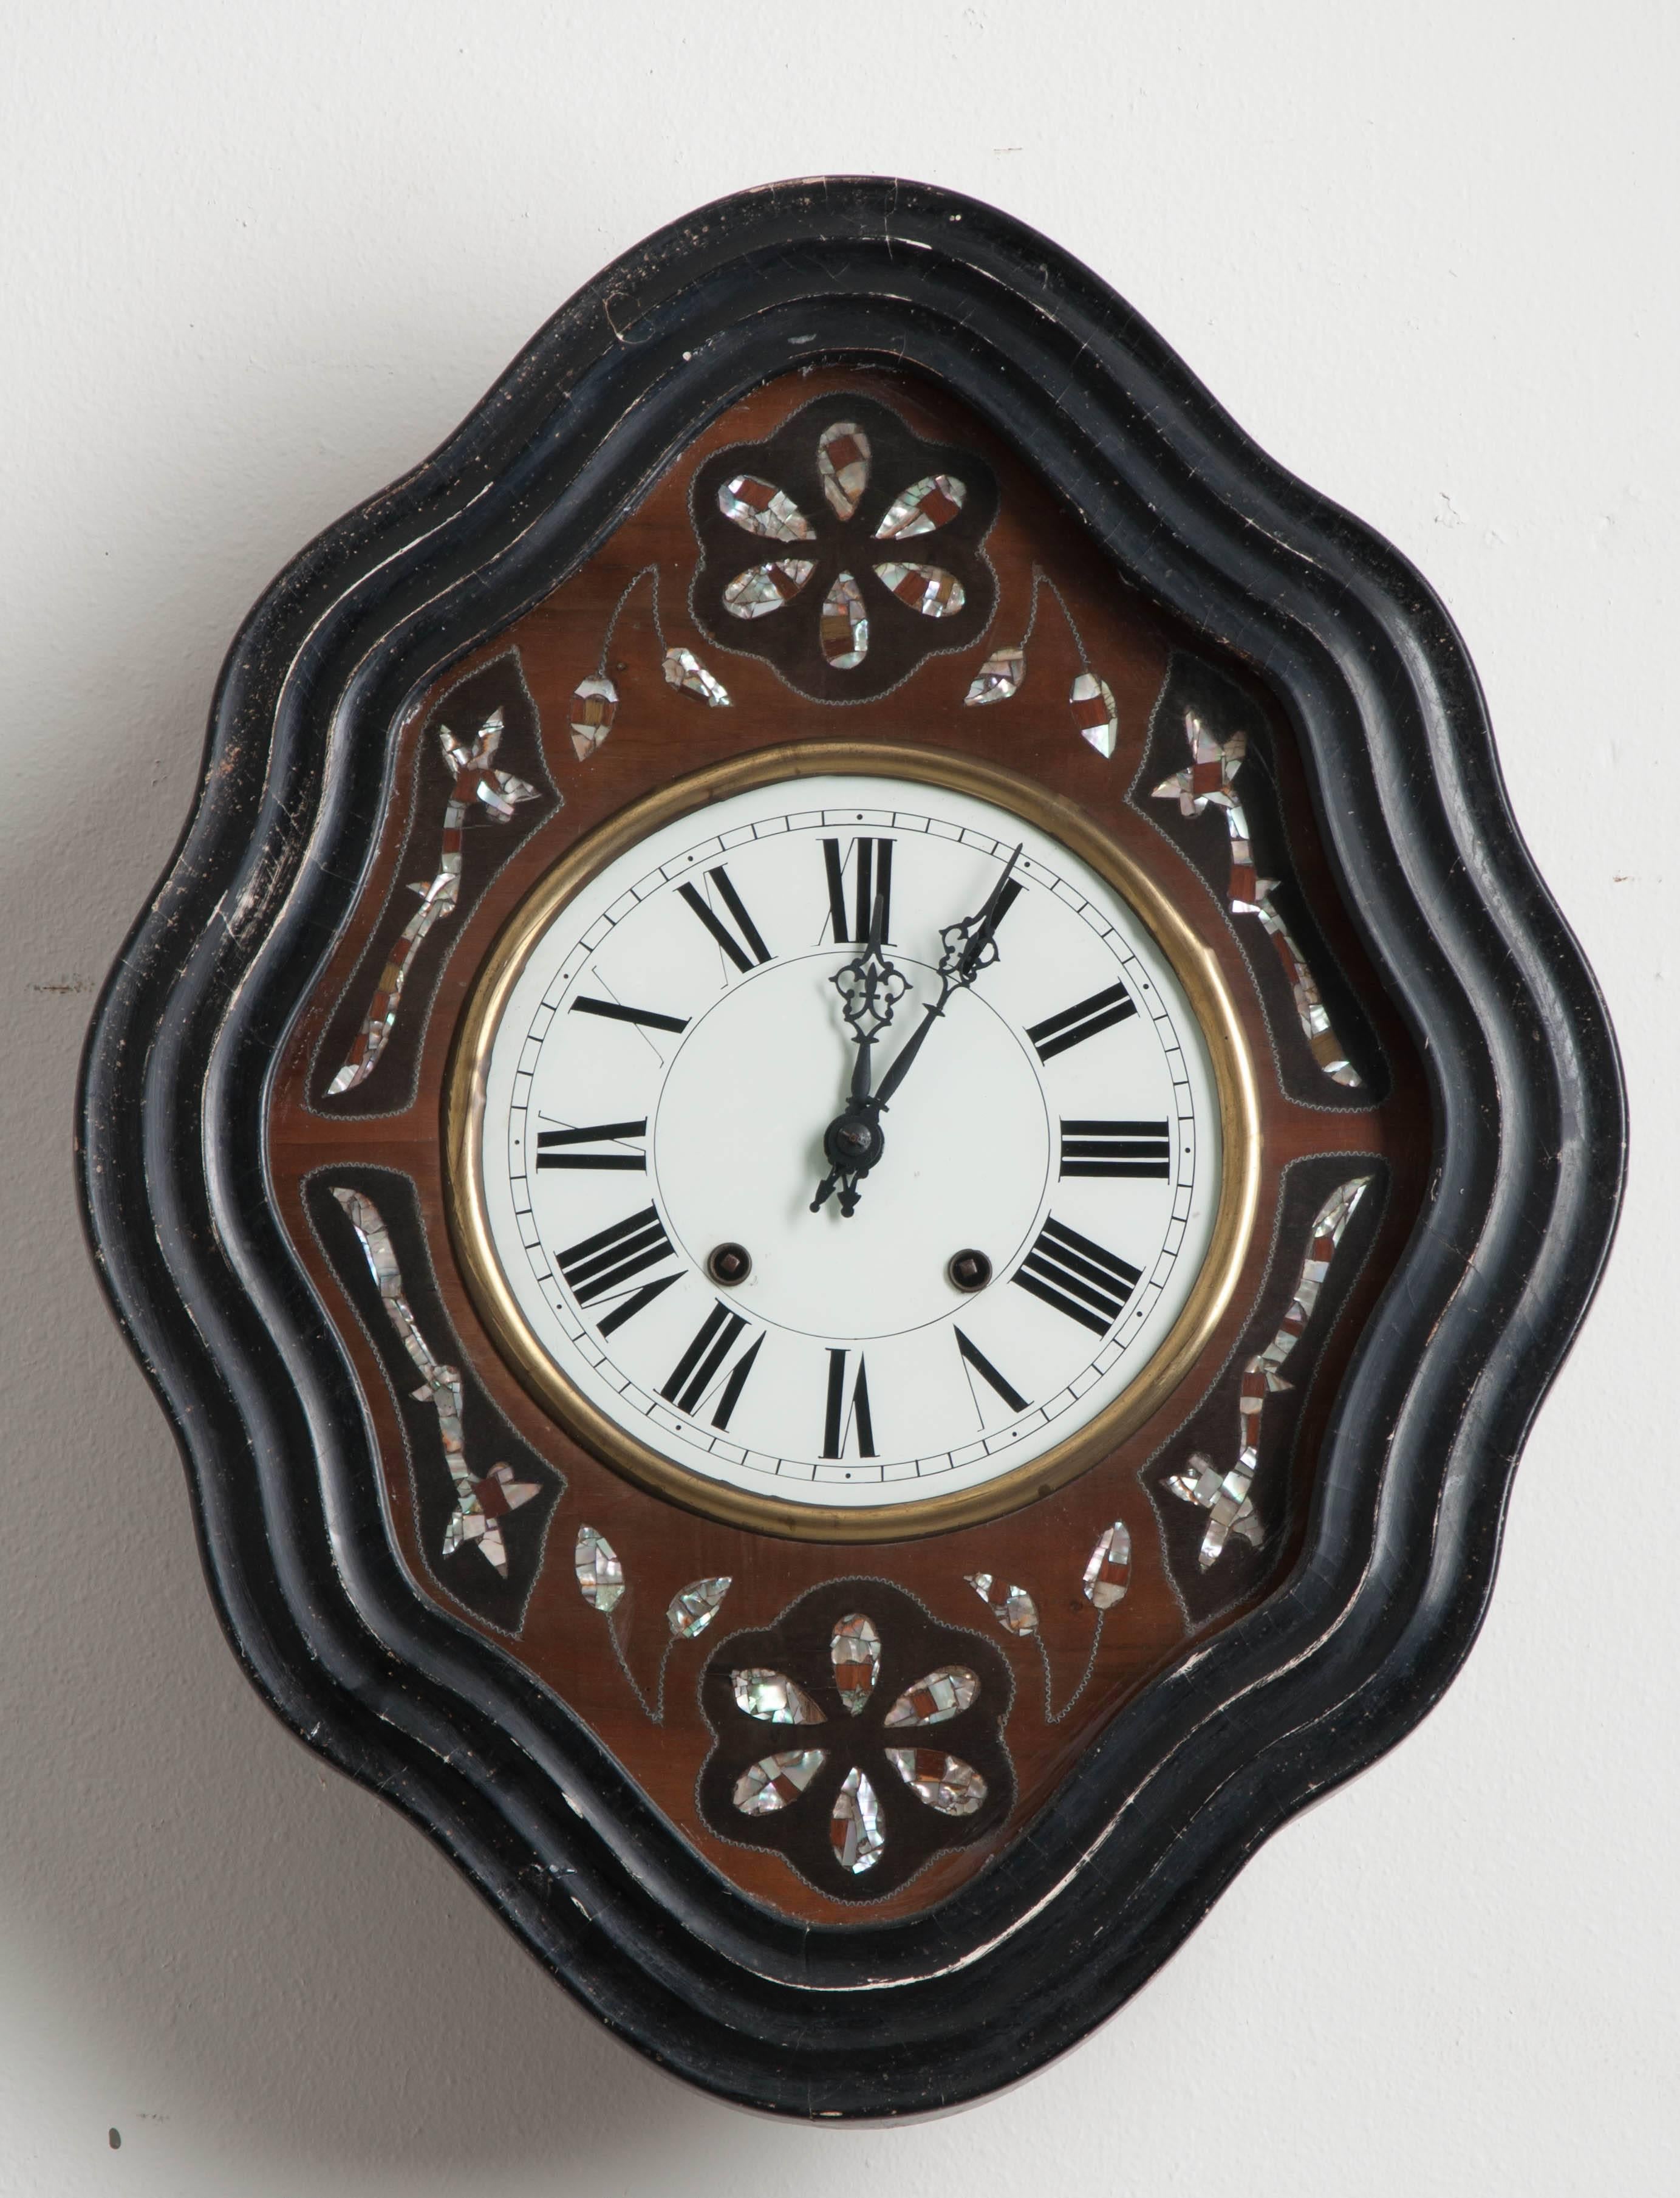 Diese Uhr aus dem 19. Jahrhundert besticht durch ihren rautenförmigen, gewellten Uhrenrahmen aus ebenholzfarbenem Holz. Blumen- und Blattmuster aus Perlmutt sind in unterschiedlich gebeiztem Mahagoni und glänzendem Perlmutt eingelegt und umgeben das